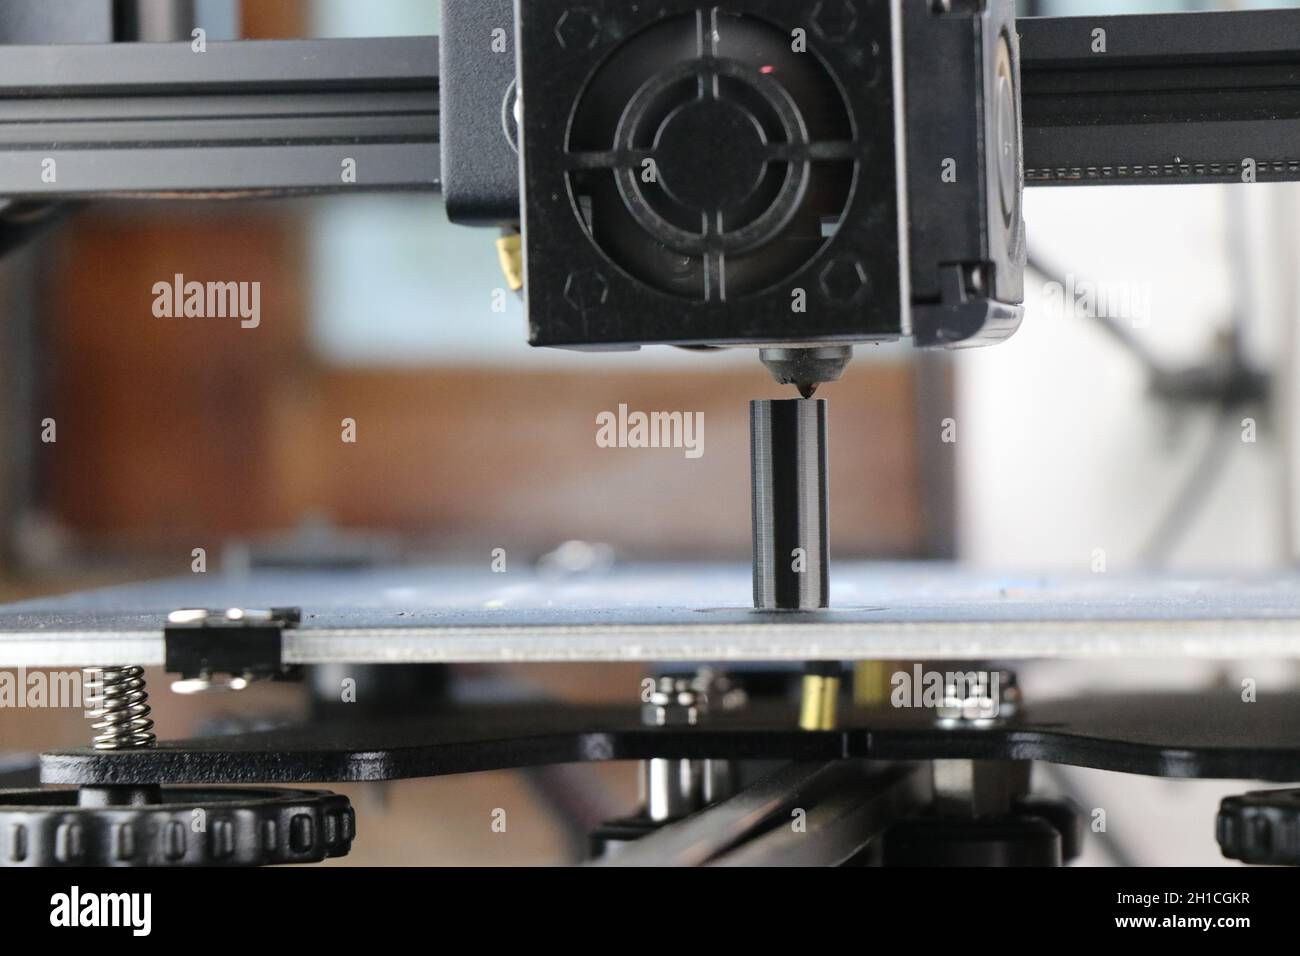 Imprimante 3D moderne permettant la création de produits ou la fabrication additive à l'aide de la technologie d'automatisation robotique.Tête d'impression en action Banque D'Images